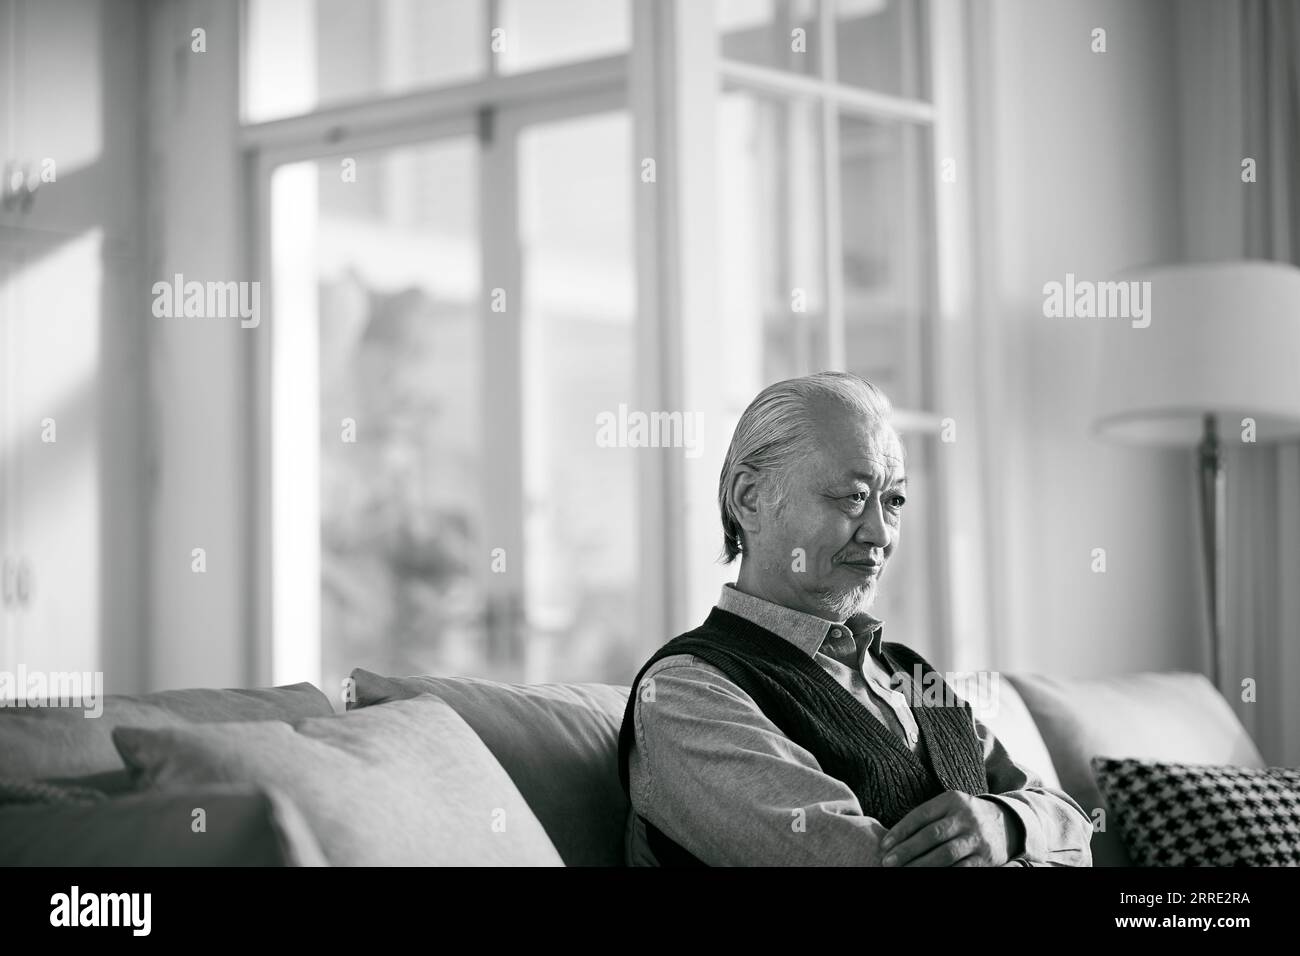 triste vieil homme asiatique assis seul sur le canapé dans le salon à la maison, noir et blanc Banque D'Images